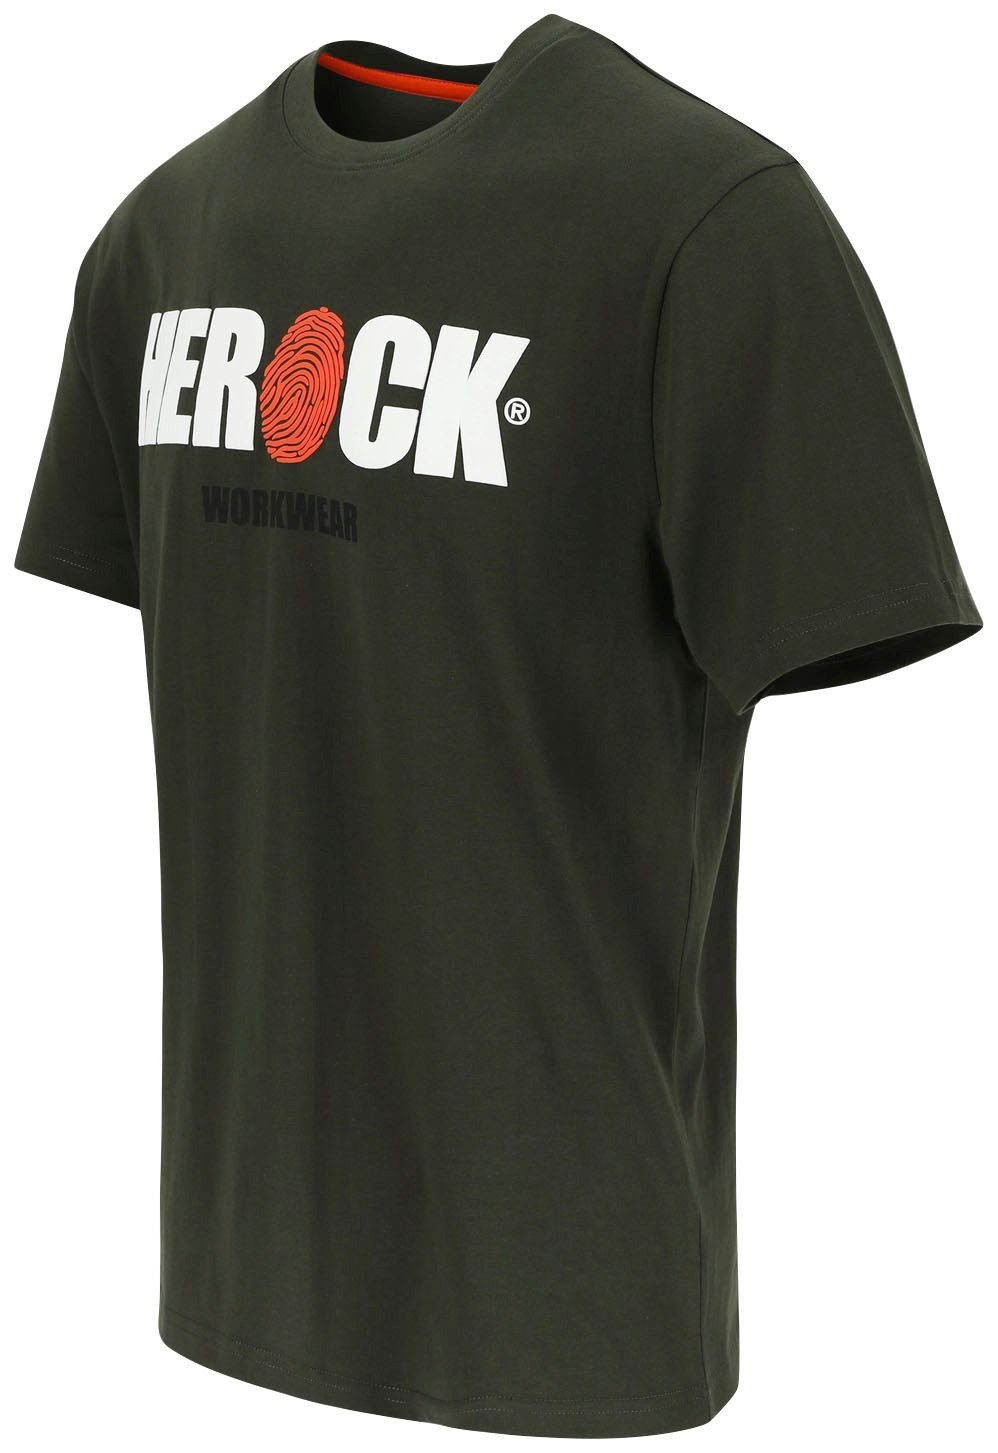 ENI Baumwolle, Tragegefühl Herock®-Aufdruck, Herock T-Shirt Rundhals, mit angenehmes khaki